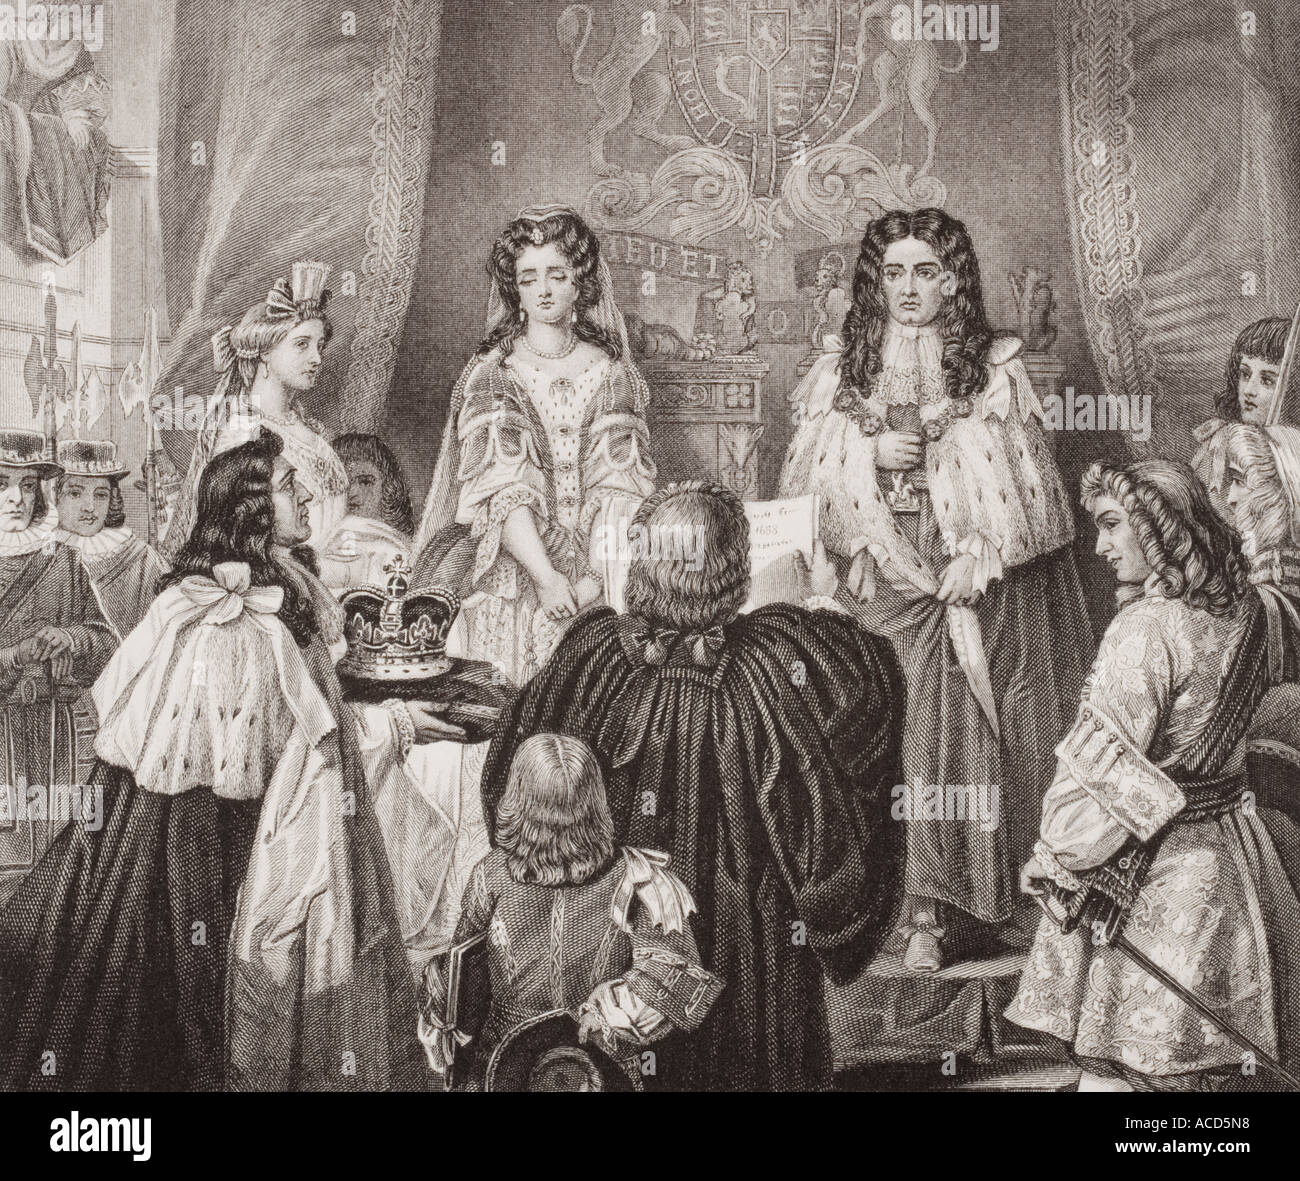 La couronne offerte à William et à Marie. William III, Mary II, co-dirigeants de l'Angleterre, de l'Écosse et de l'Irlande. Banque D'Images